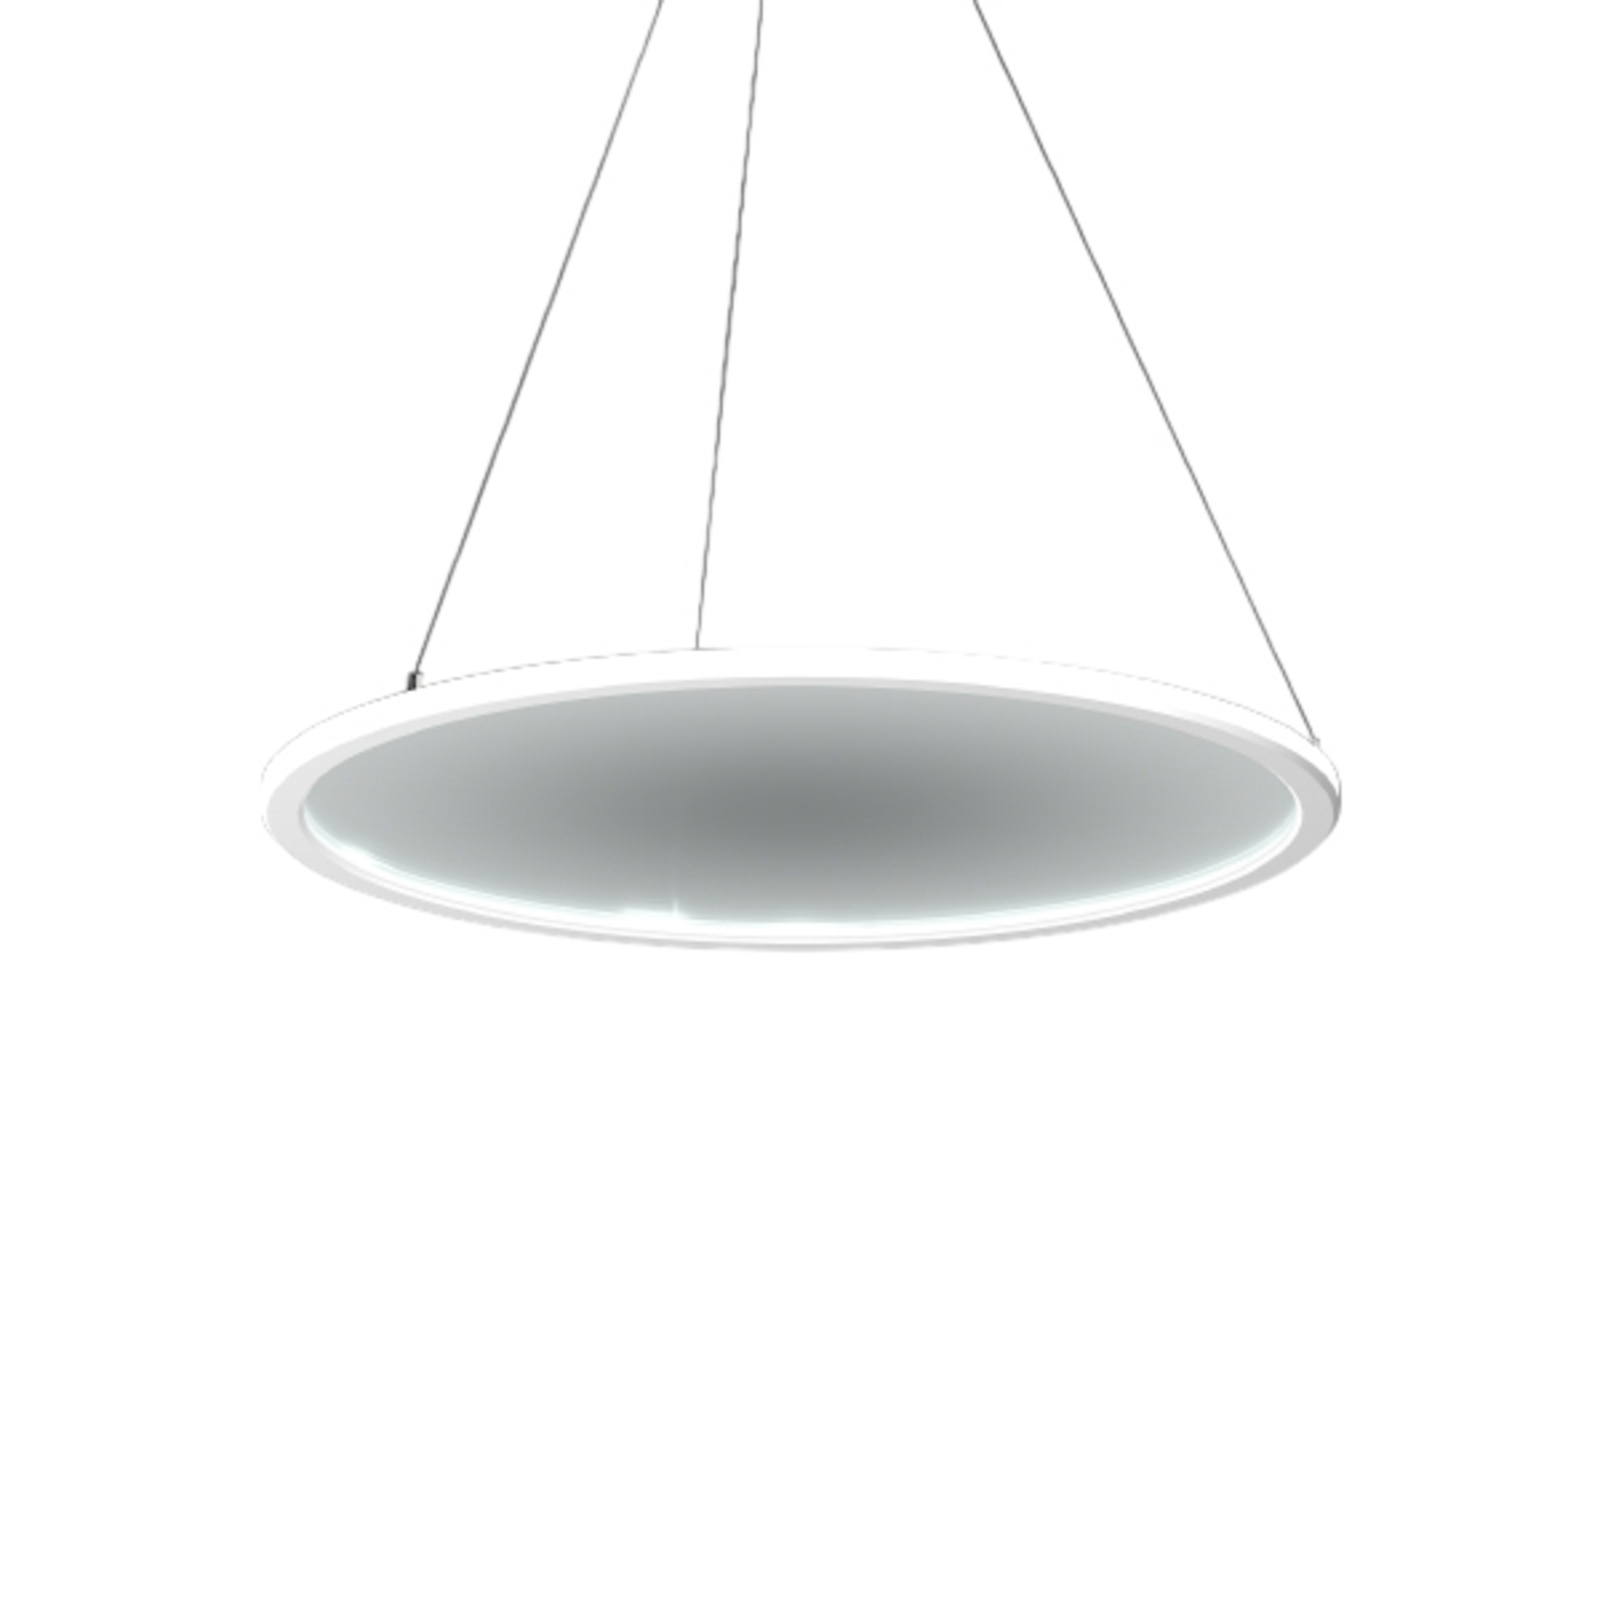 RZB Sidelite Eco hanglamp Ø 58cm helder 4.000 K